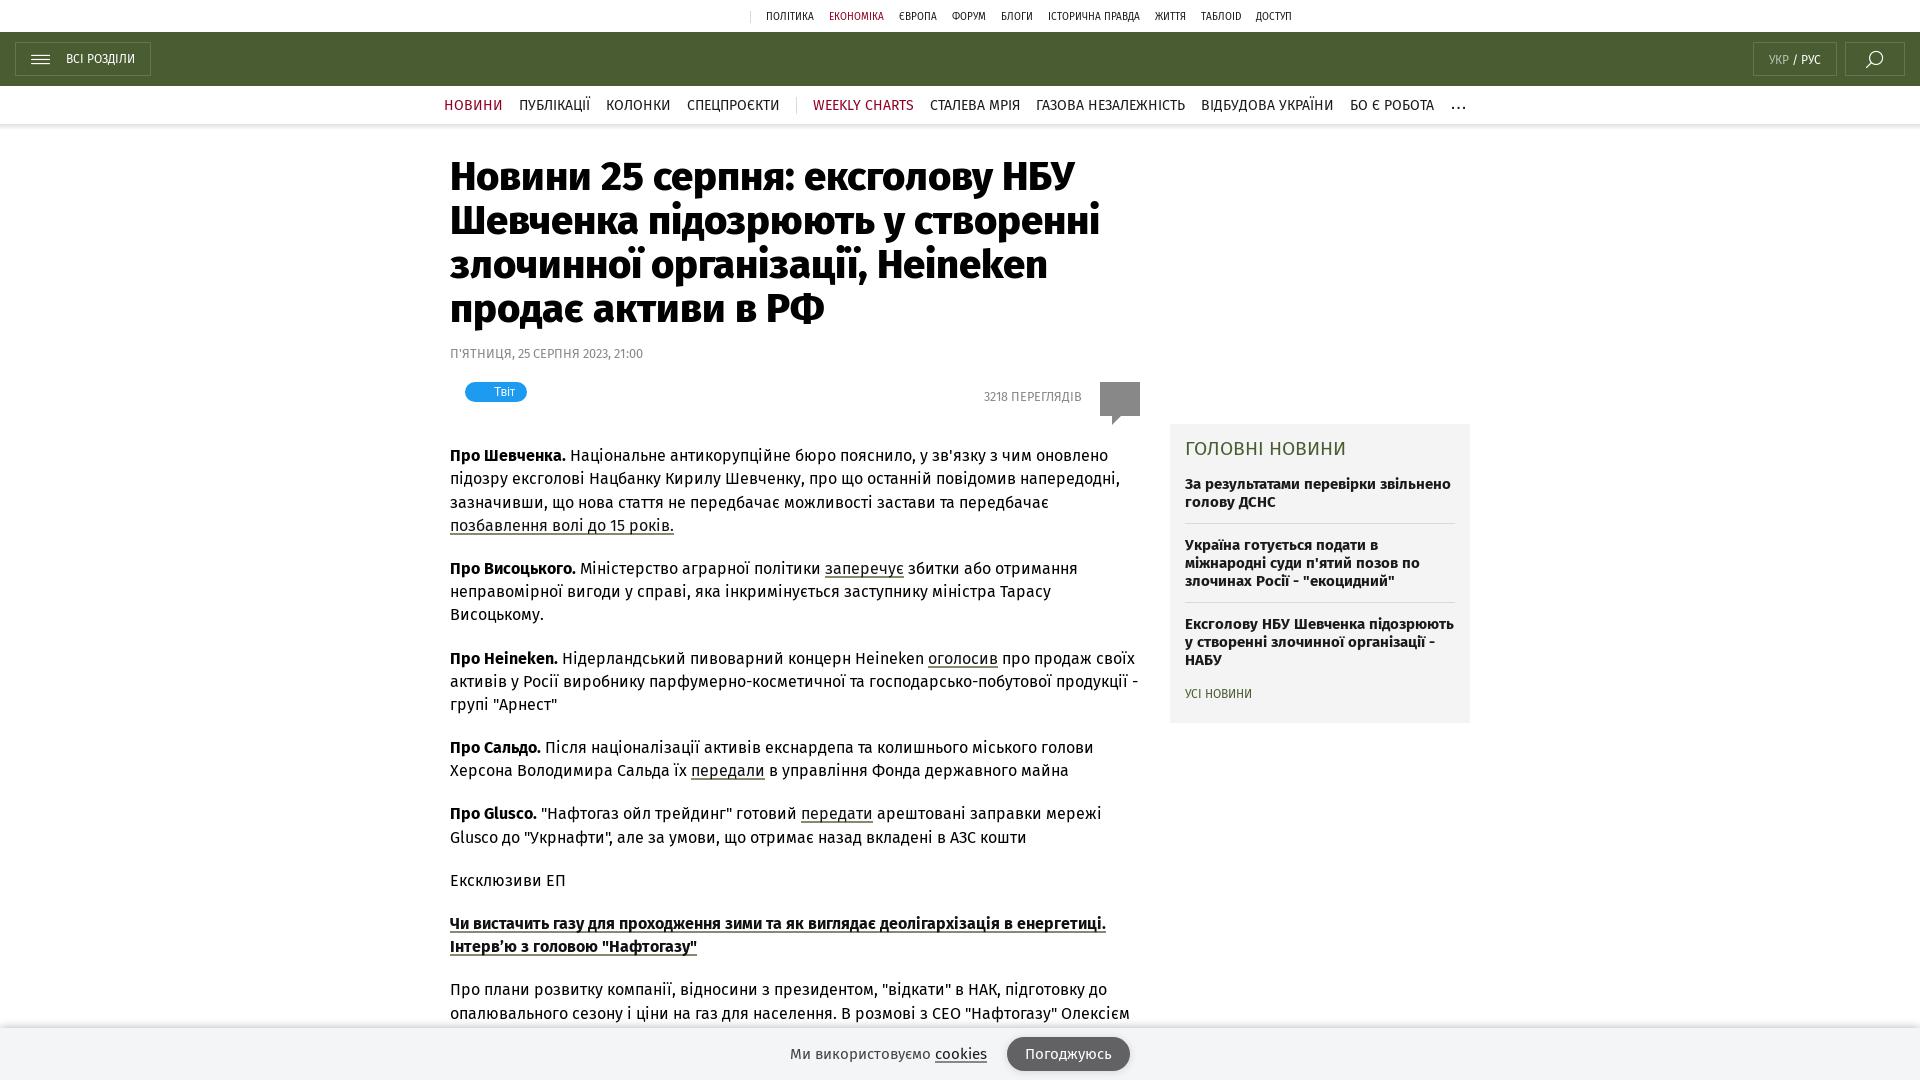 Wiadomość z 25 sierpnia: Szewczenko, były prezes Narodowego Banku Ukrainy, jest podejrzany o utworzenie organizacji przestępczej;  Heineken sprzedaje swoje aktywa w Rosji |  Wiadomość do bota